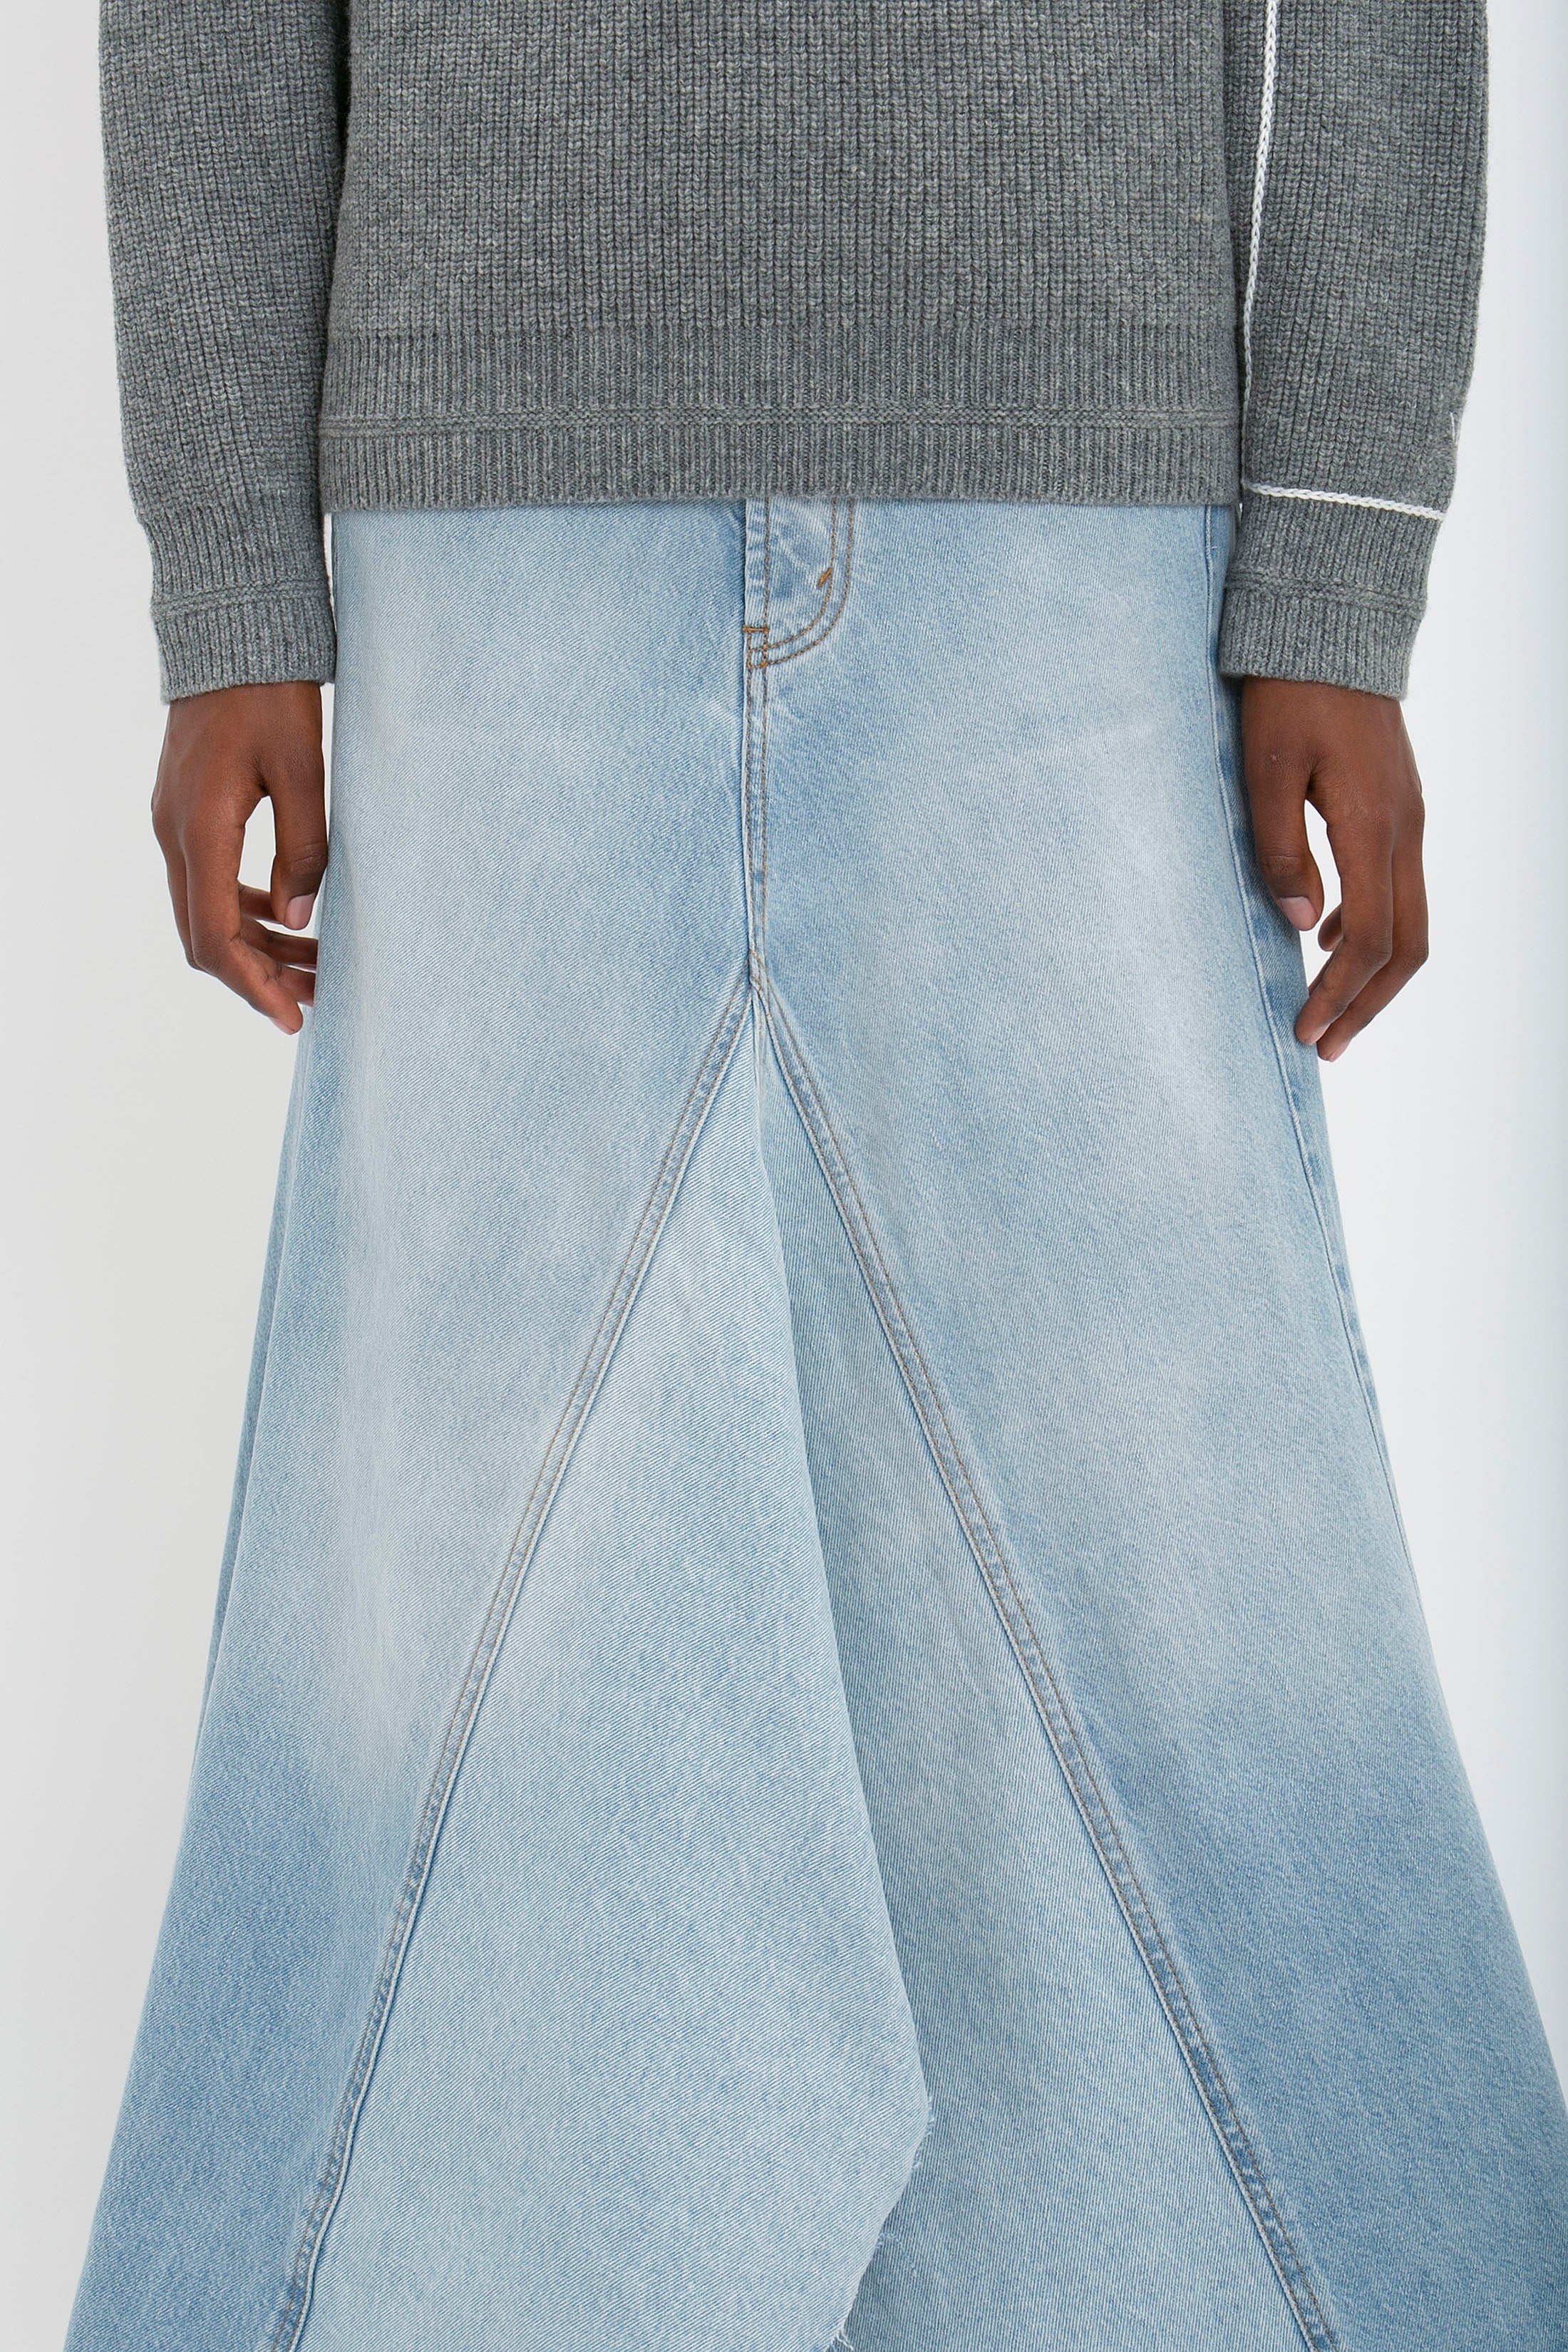 Maxi Godet Denim Skirt In Light Blue Wash - 5